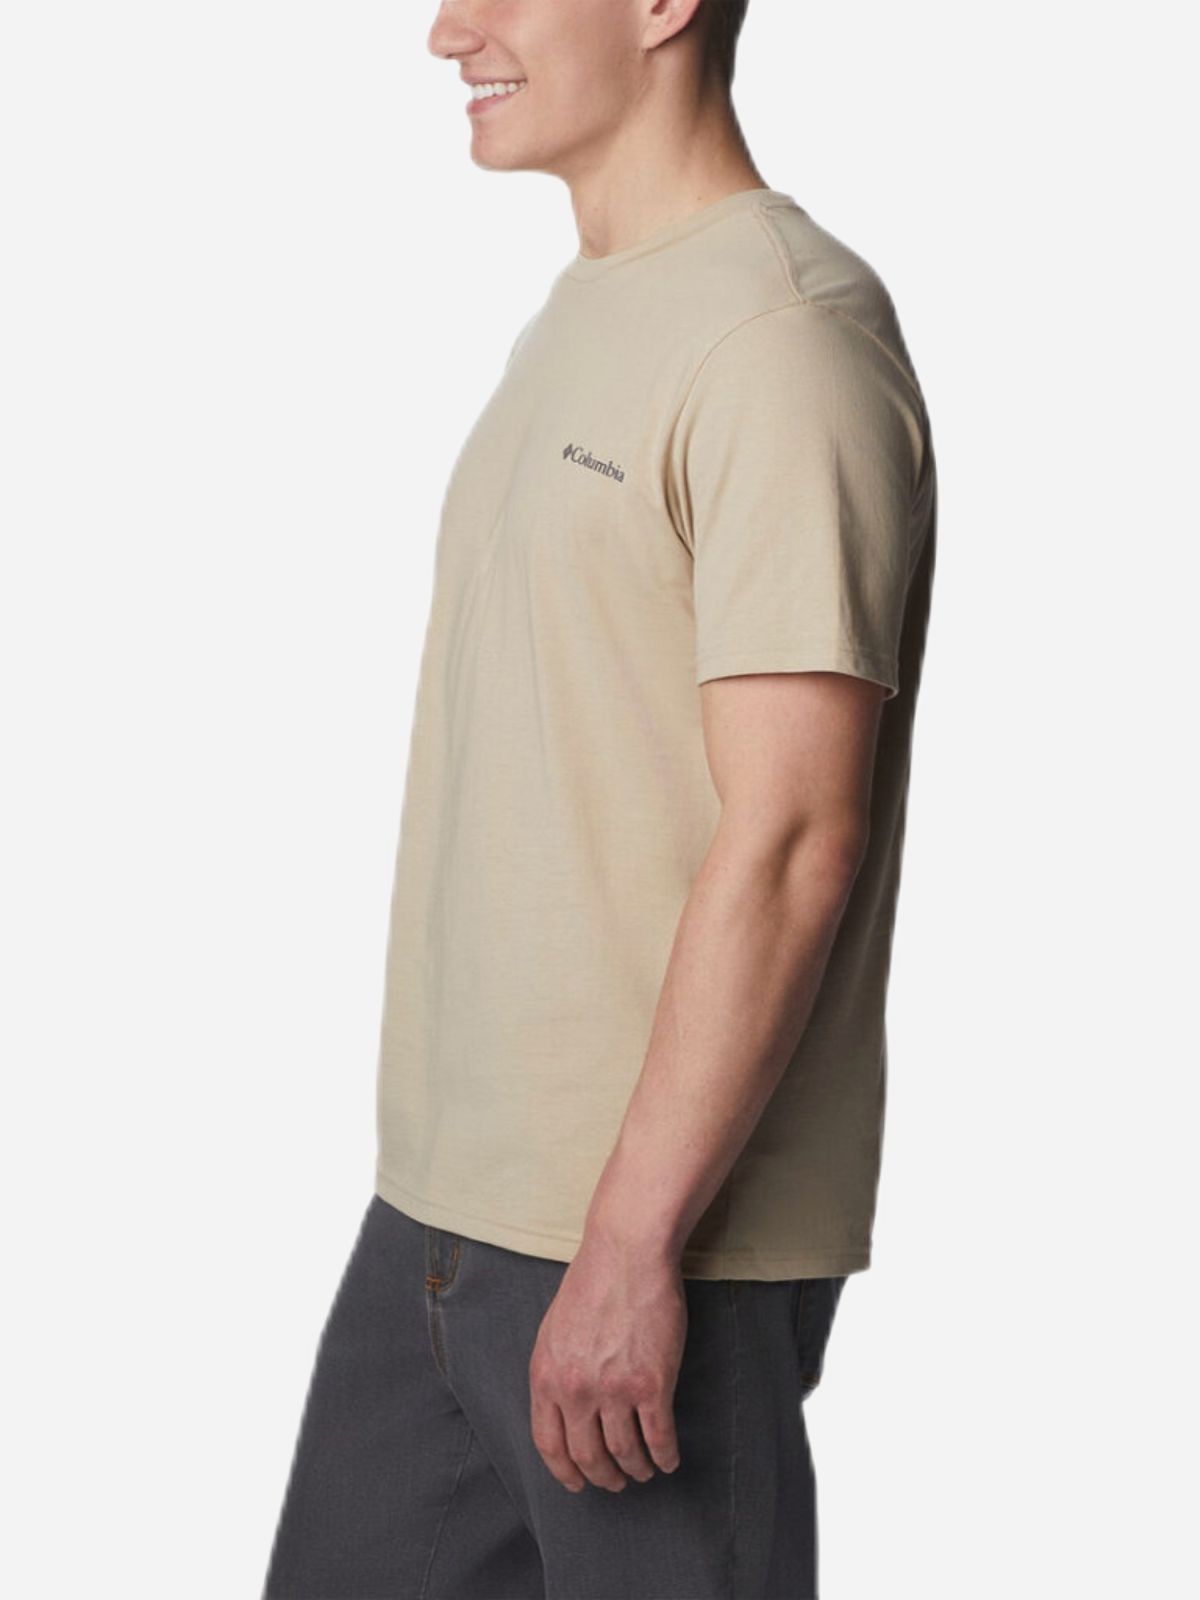  חולצת טי שירט בשילוב הדפס לוגו / גברים של COLUMBIA